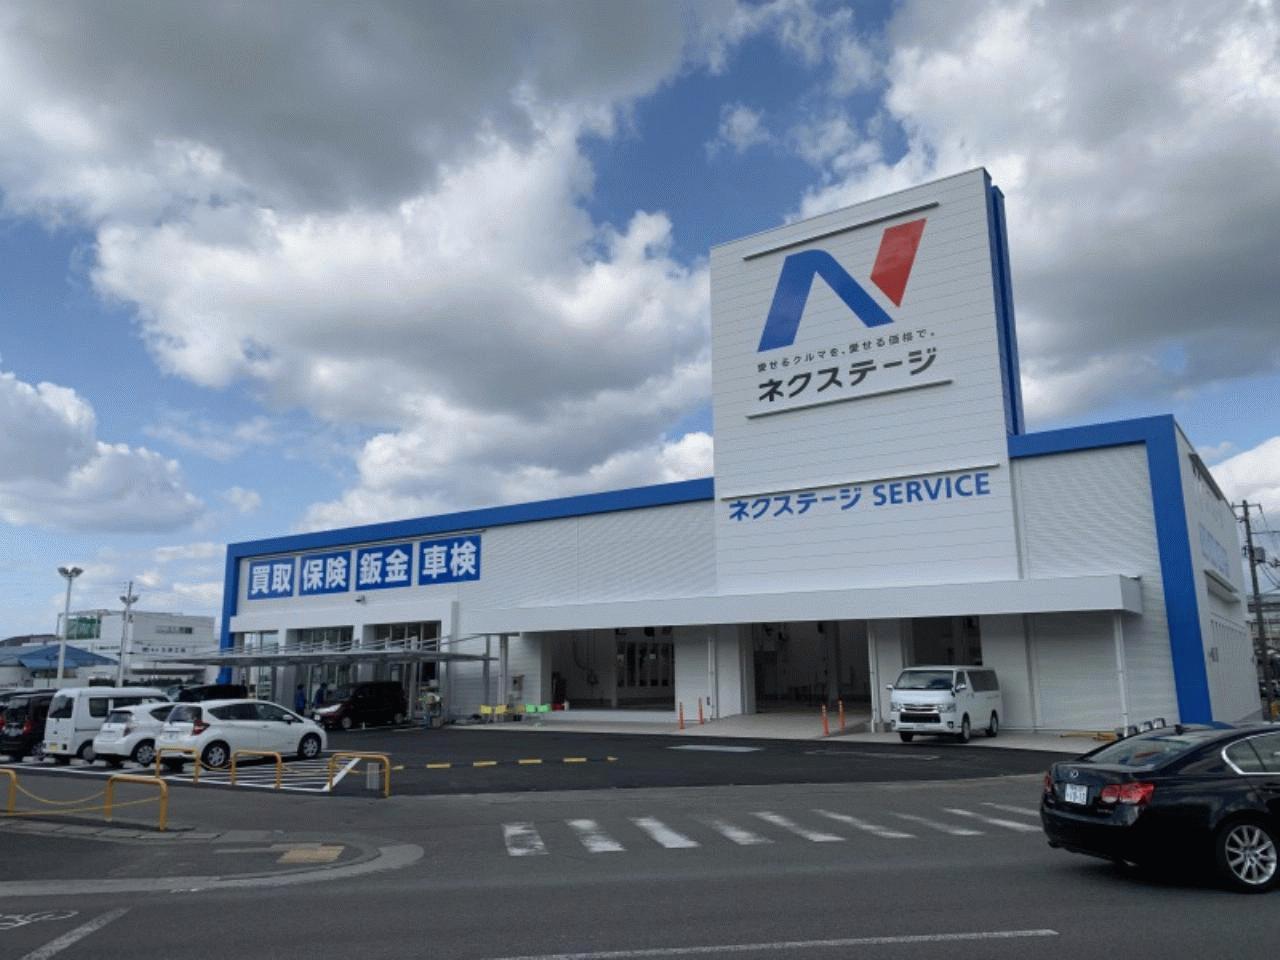 ネクステージ 松山中央店 愛媛県松山市 Mjnetディーラー お店の情報